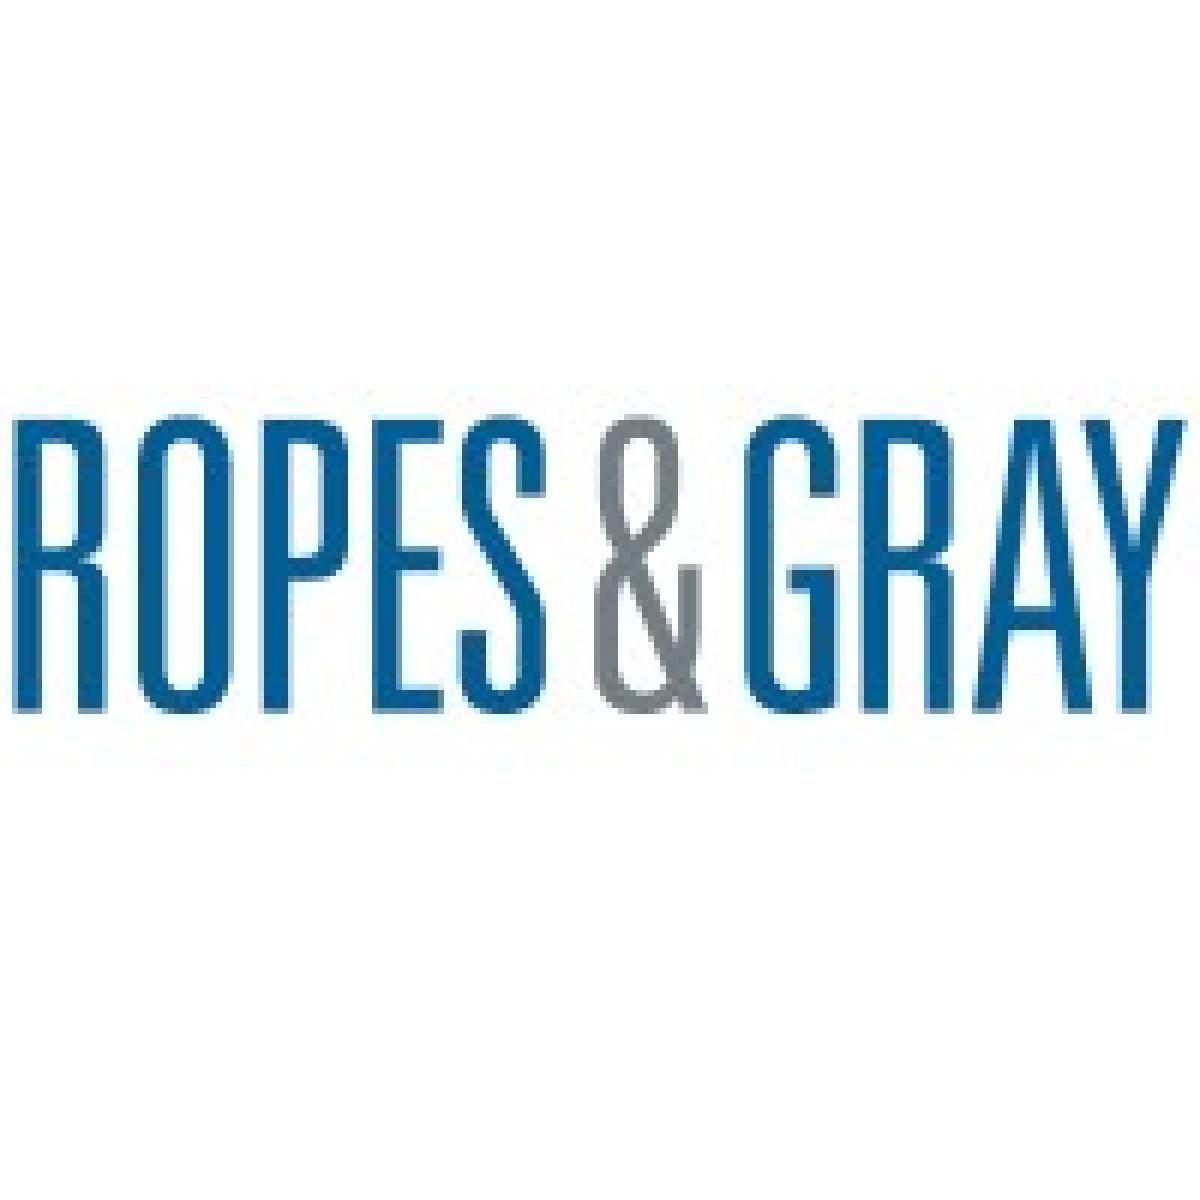 Ropes & Gray Logo